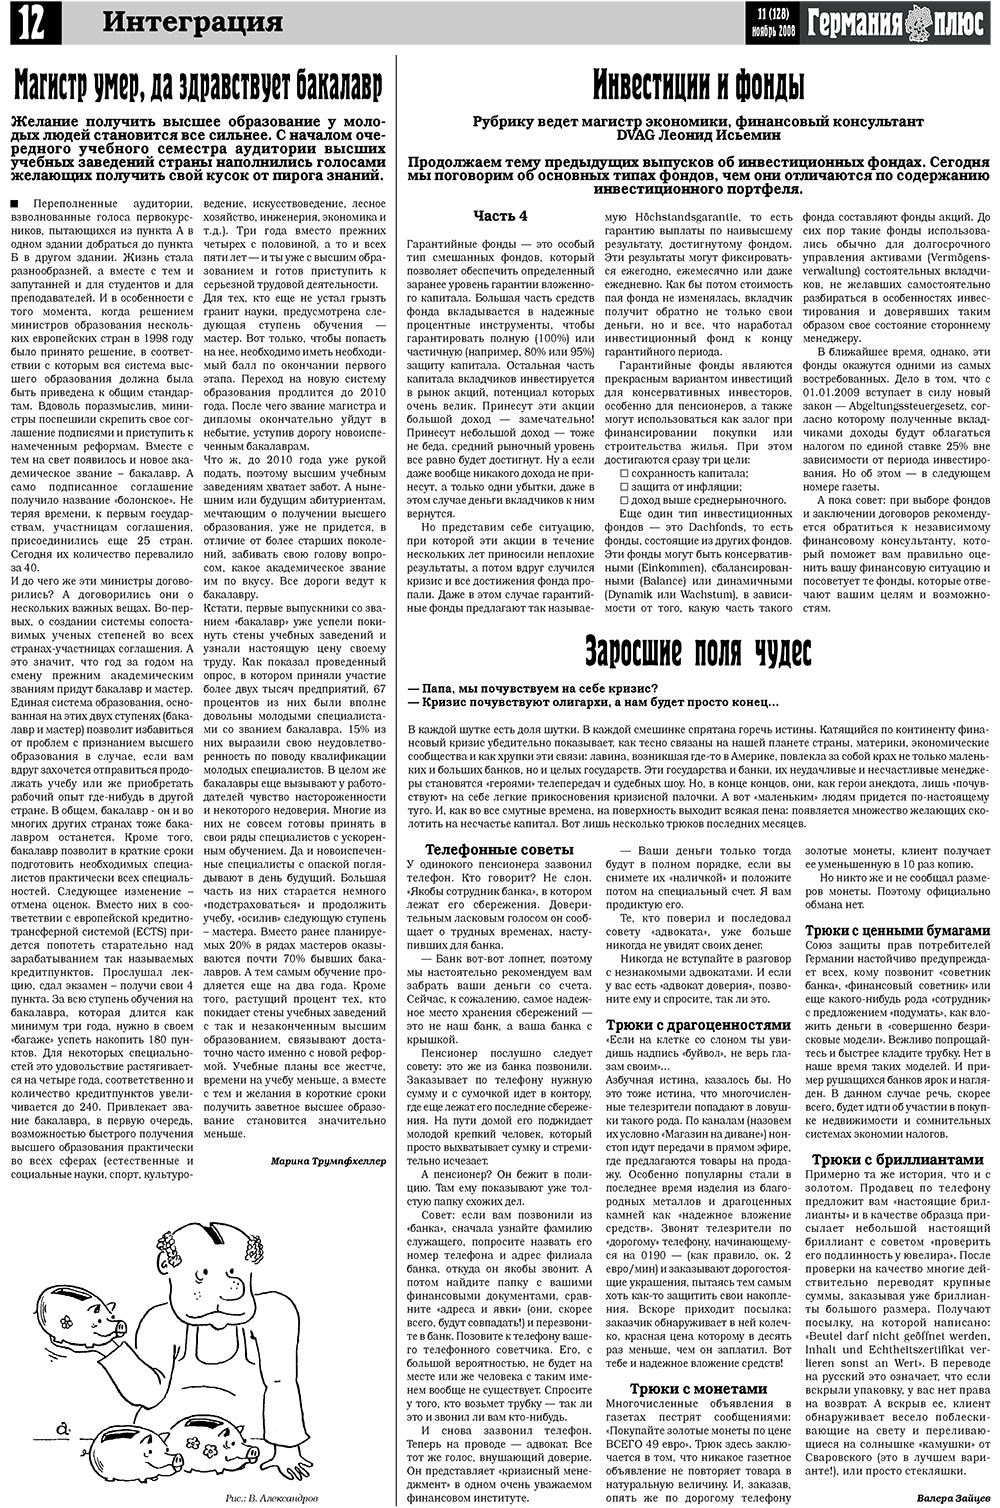 Германия плюс, газета. 2008 №11 стр.14